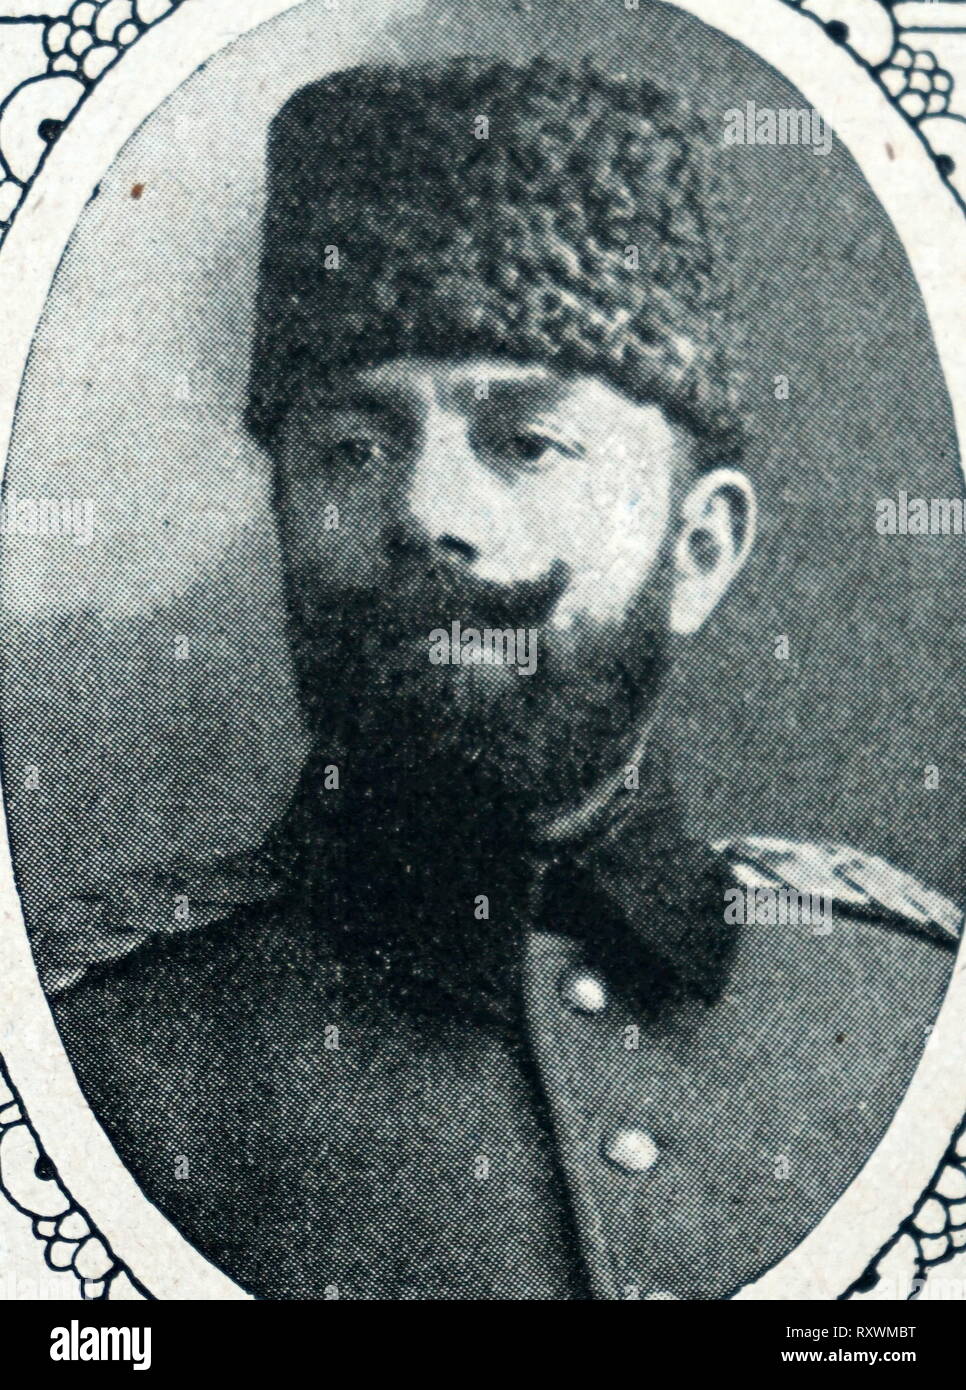 Ahmed Djemal Pascià (1872 - 1922), comunemente noto come Jamal Pasha il sanguinario; Ottomano leader militare e un terzo del triumvirato militare conosciuta come le tre impero ottomano (chiamato anche "Tre dittatori") che ha governato l'Impero Ottomano durante la guerra mondiale I. Foto Stock